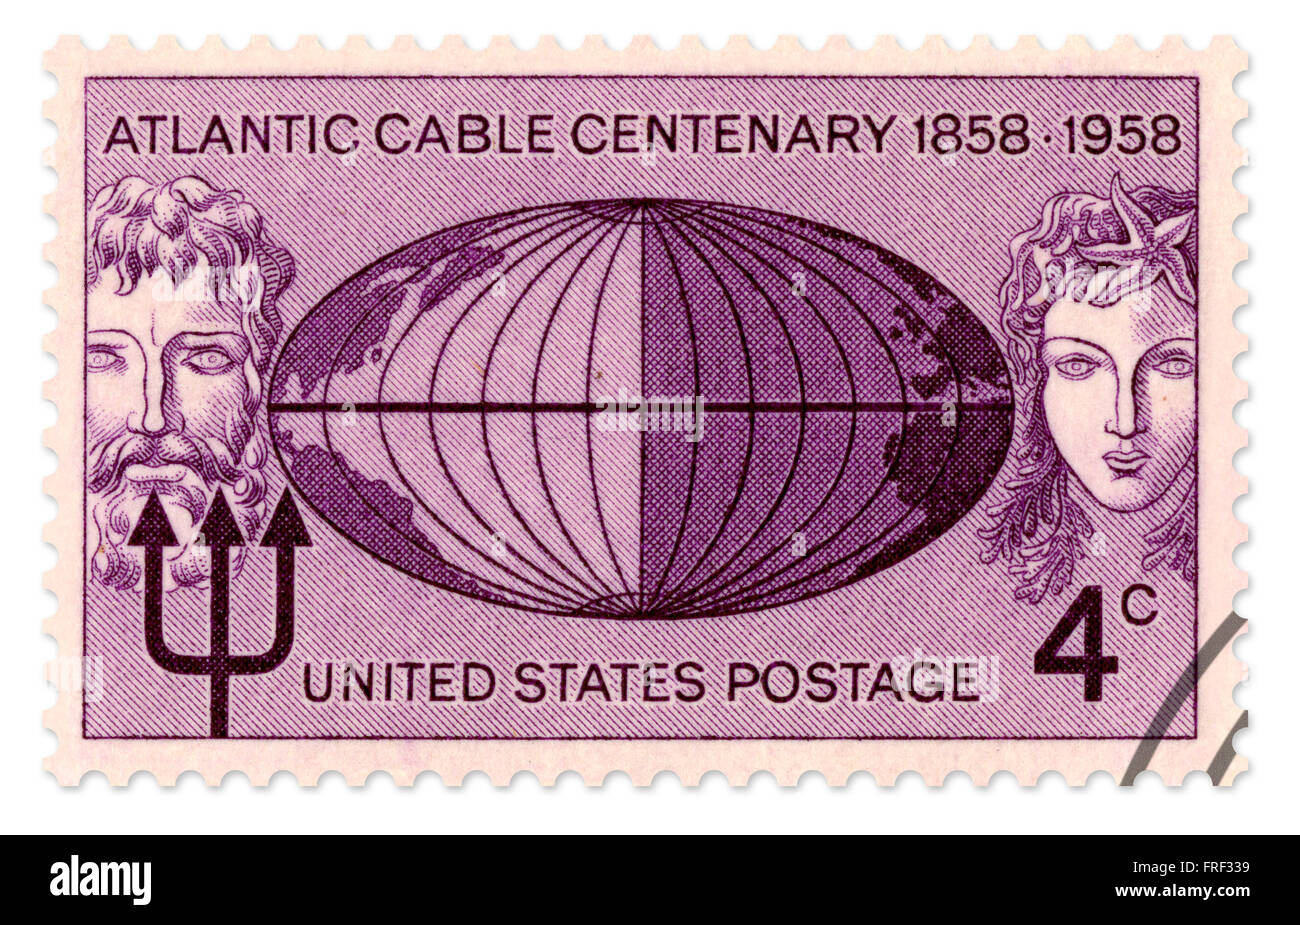 Sonderbriefmarke der Vereinigten Staaten für die Atlantic Kabel Centenary 1858-1958, ausgestellt im Jahr 1958 vom US Postal Service. Diese hohe Auflösung scannen umfasst einen Beschneidungspfad. Stockfoto